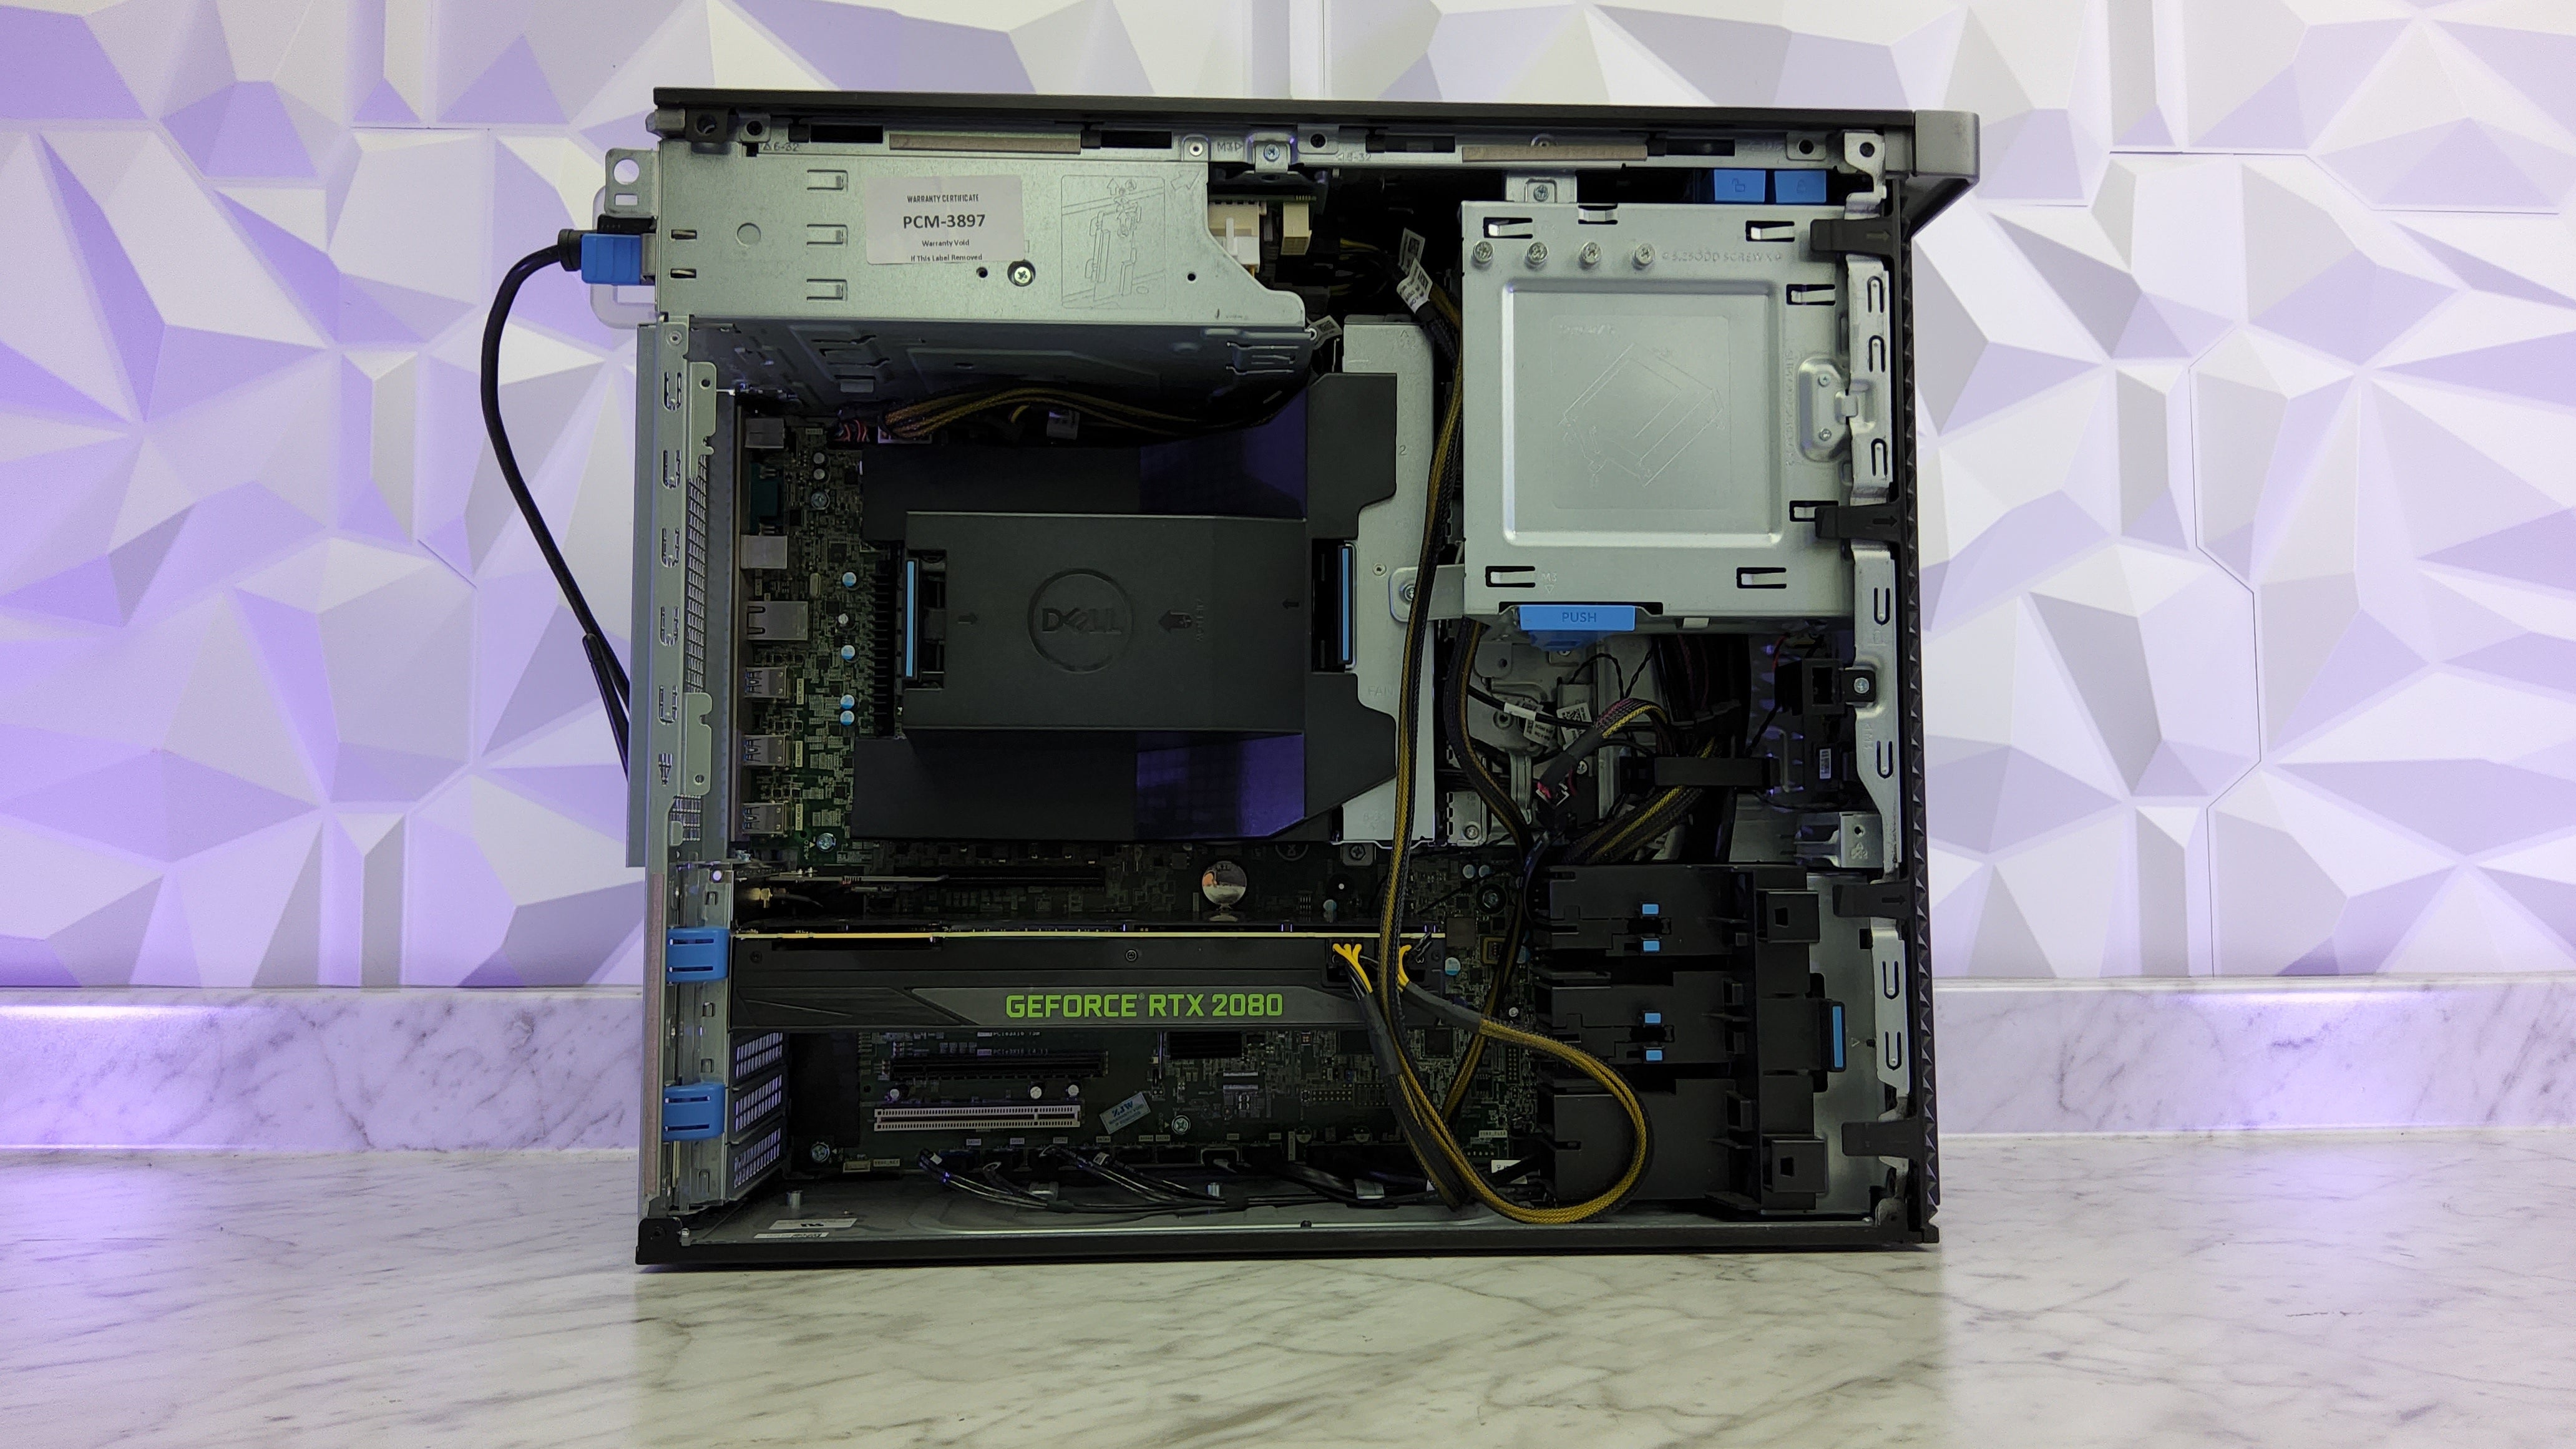 Intel Xeon W2135 + RTX 2080 Gaming PC (In Stock)